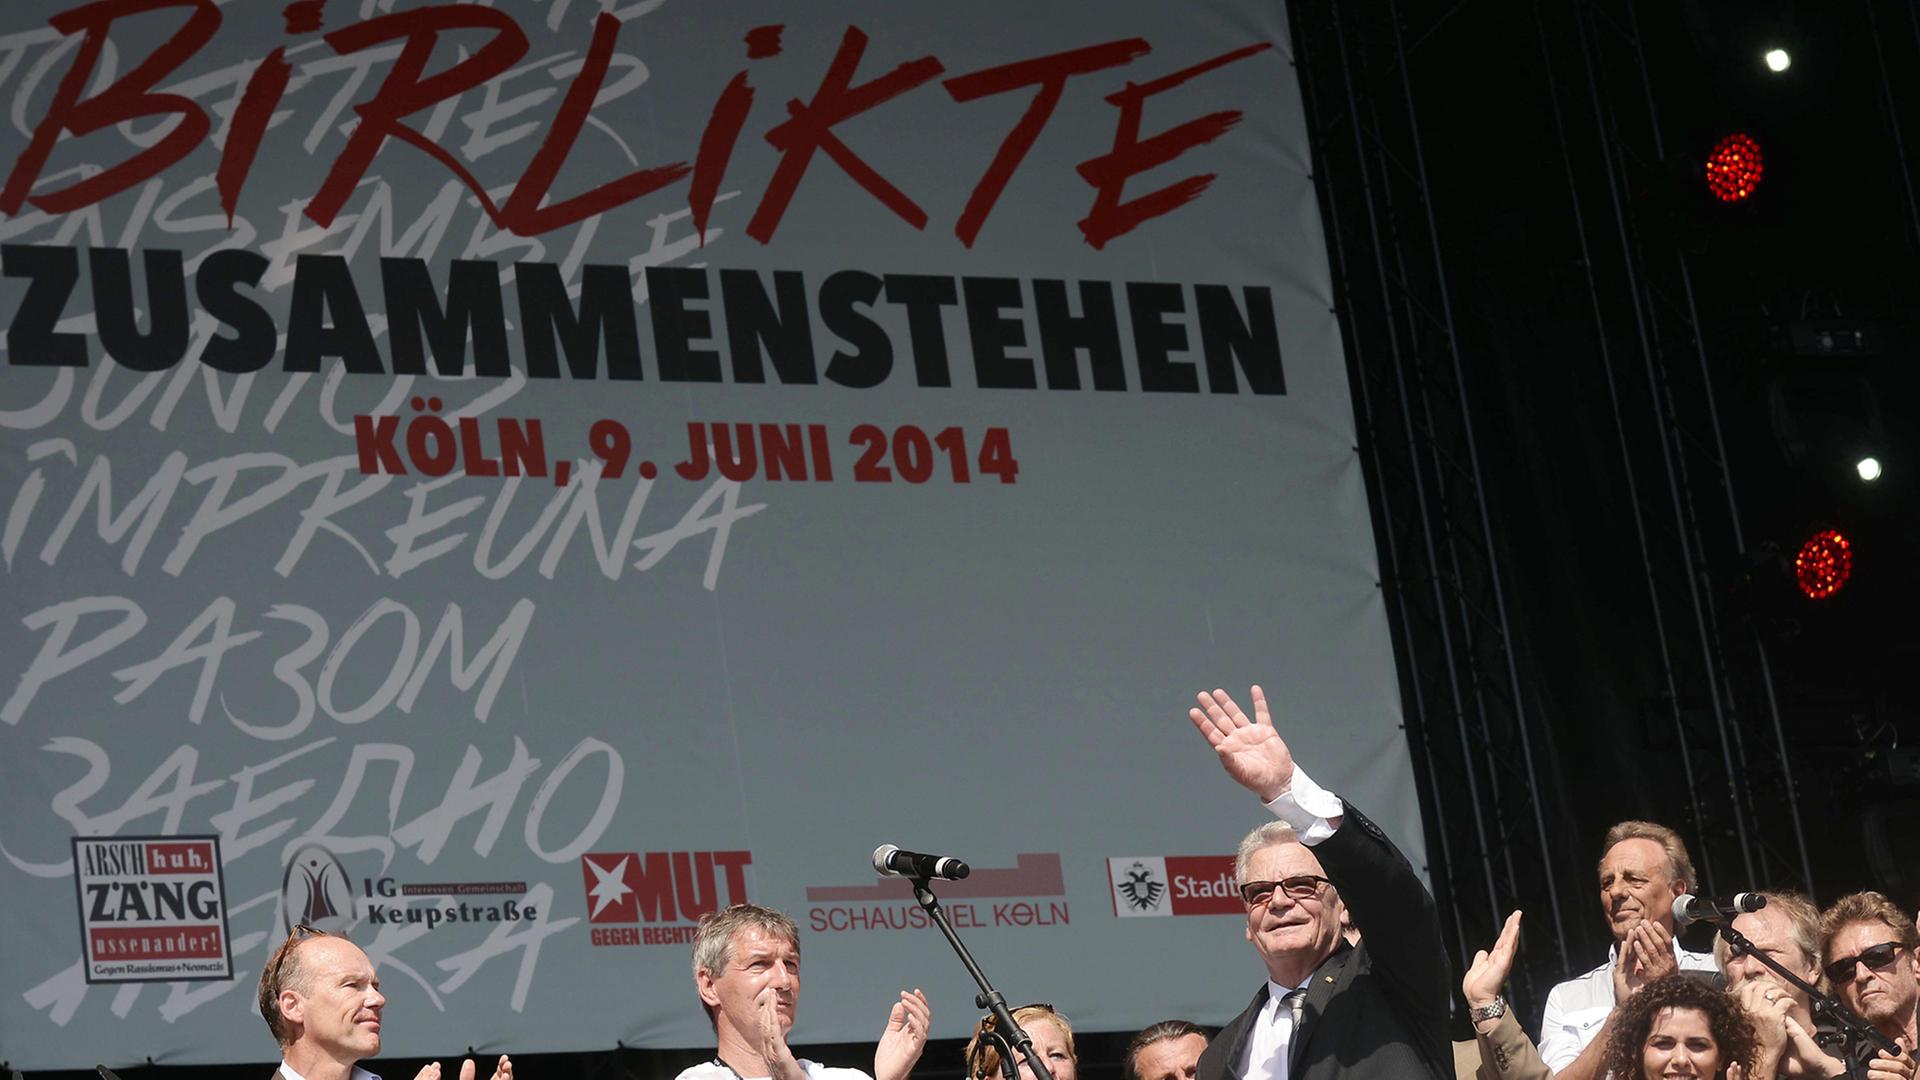 Bundespräsident Joachim Gauck (M) steht zusammen mit dem Mitgliedern der "Arsch Huh AG" am 09.06.2014 beim Kulturfest "Birlikte - Zusammenstehen" zum Gedenken an den NSU-Anschlag in Köln vor zehn Jahren (Nordrhein-Westfalen) auf der Bühne.